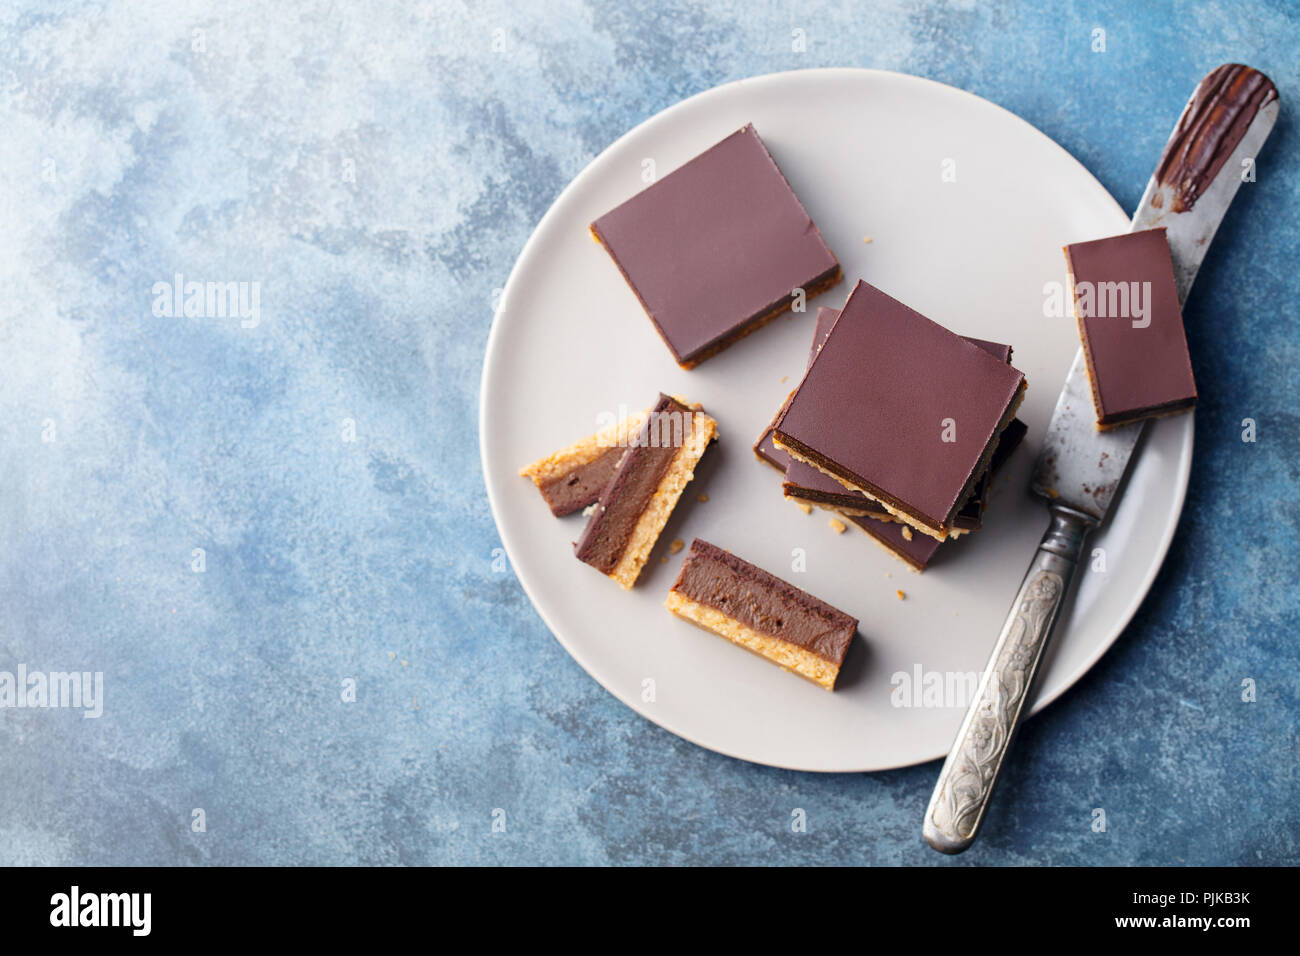 Tranches de chocolat caramel, bars, les millionnaires shortbread sur une plaque gris. Fond bleu. Vue d'en haut Banque D'Images